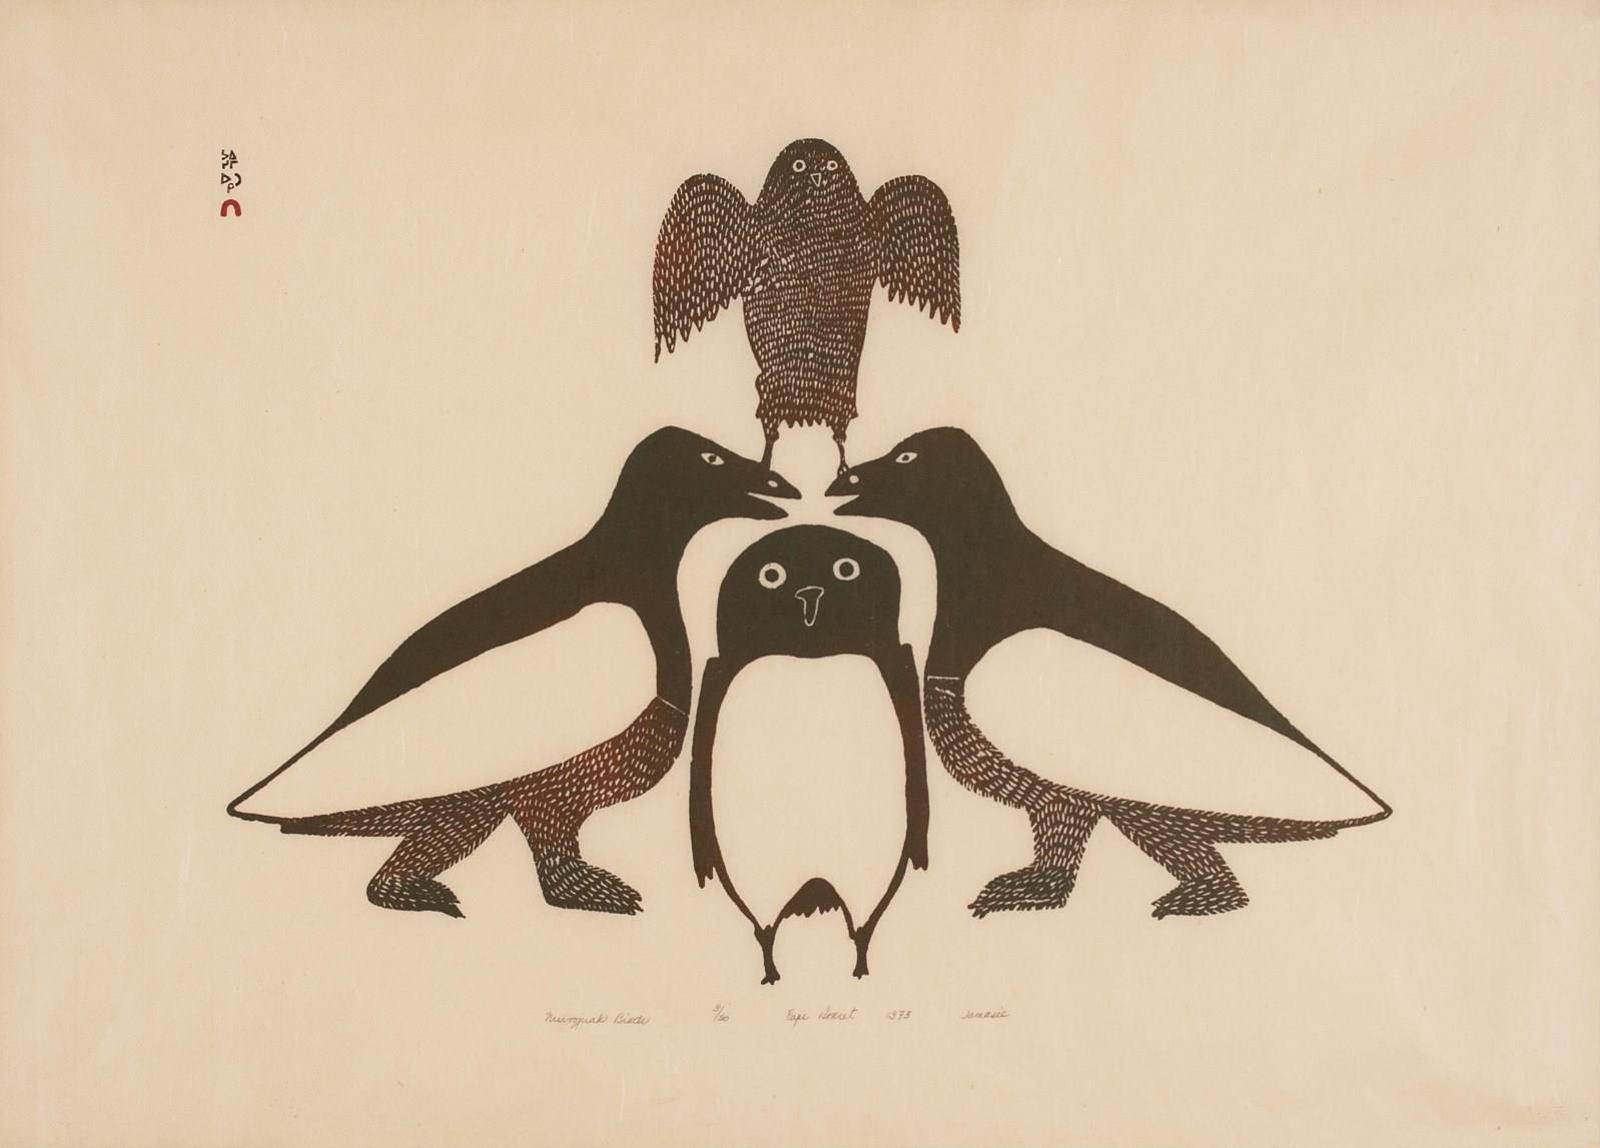 Jamasie Teevee (1910-1985) - Nuvoojuak Birds; 1973